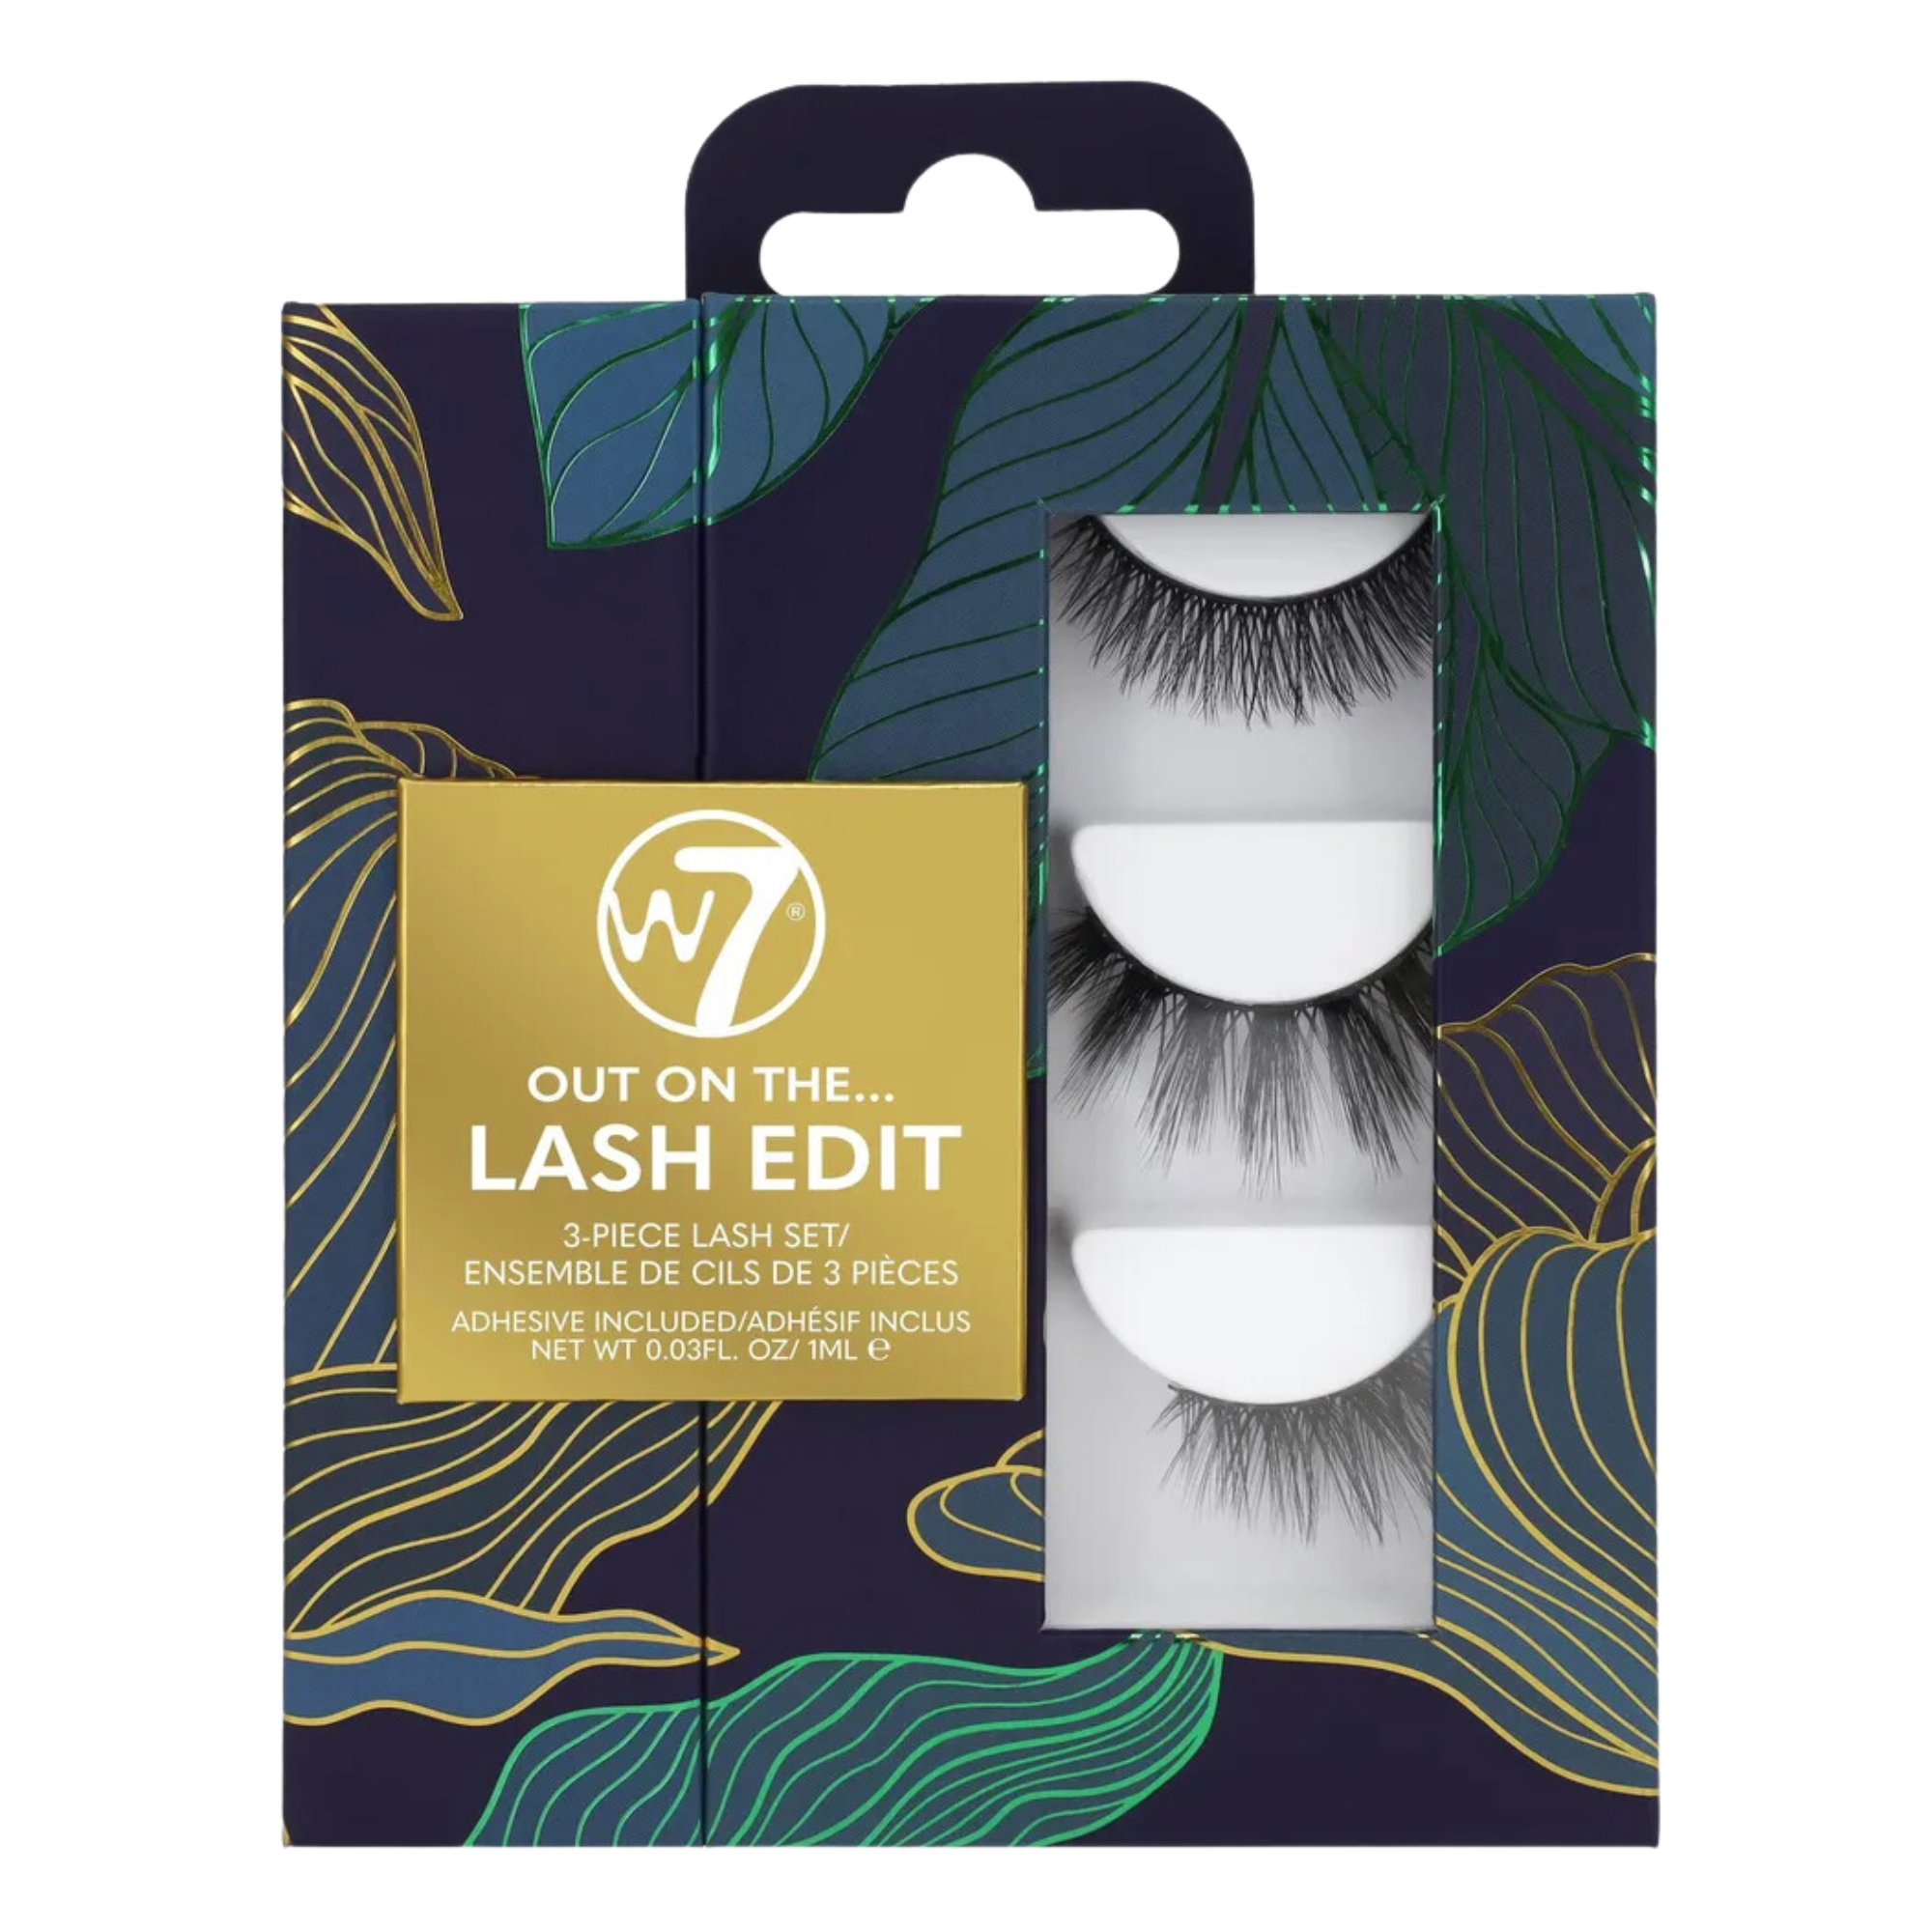 Накладные ресницы W7 Lash Edit, 3 пары/1 упаковка женский макияж бигуди для ресниц накладные ресницы натуральная завивка косметика инструменты для красоты бигуди для ресниц